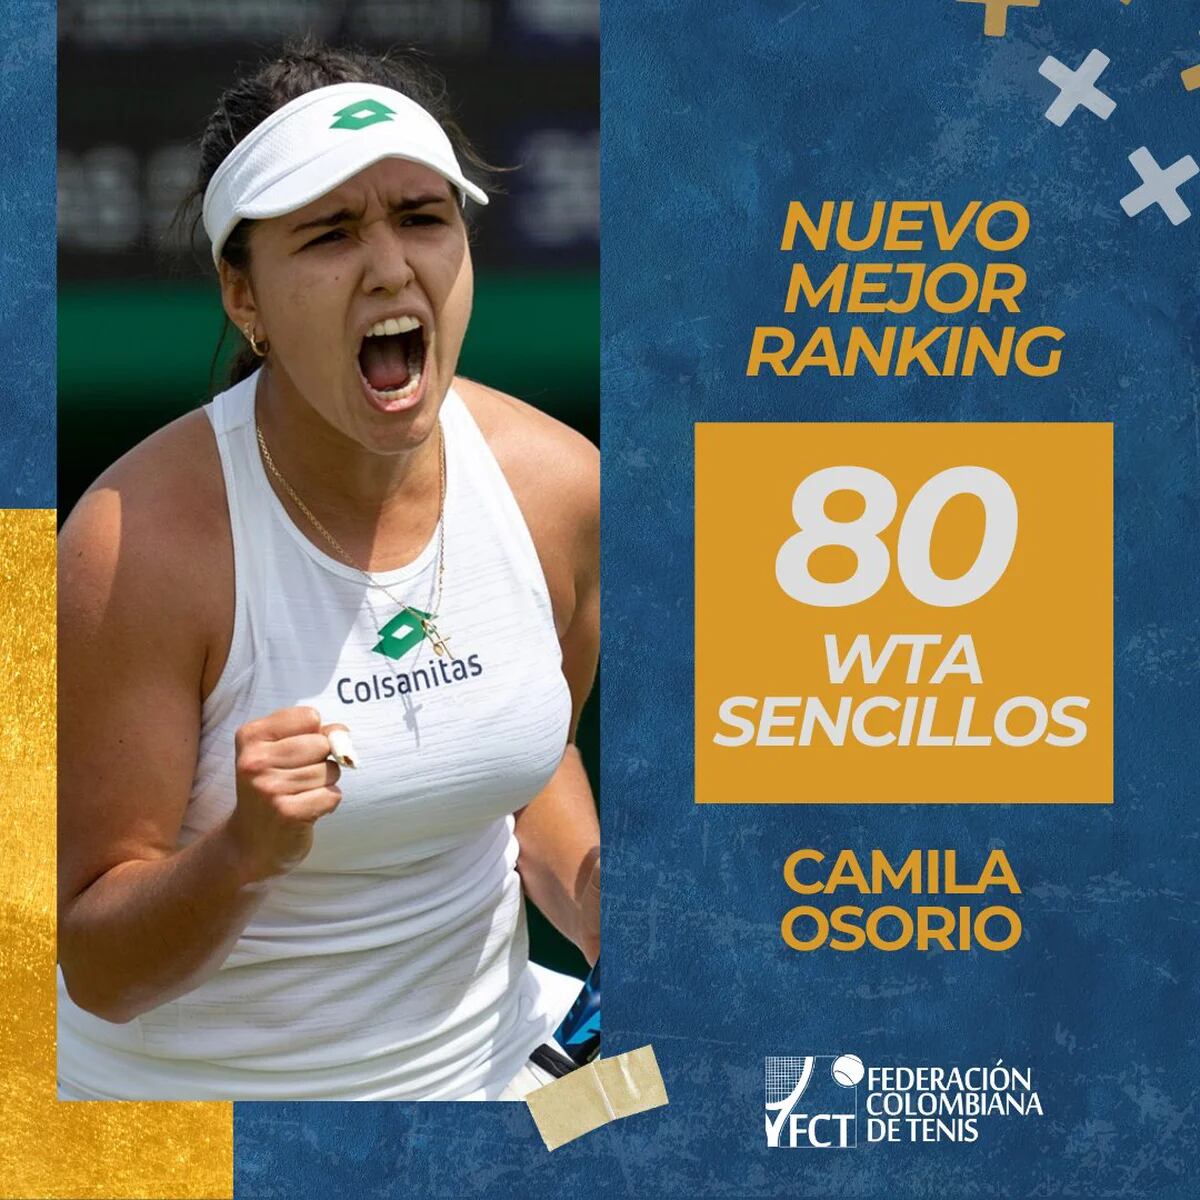 AL DÍA: Camila Osorio asciende en ranking WTA / Colombianos en La